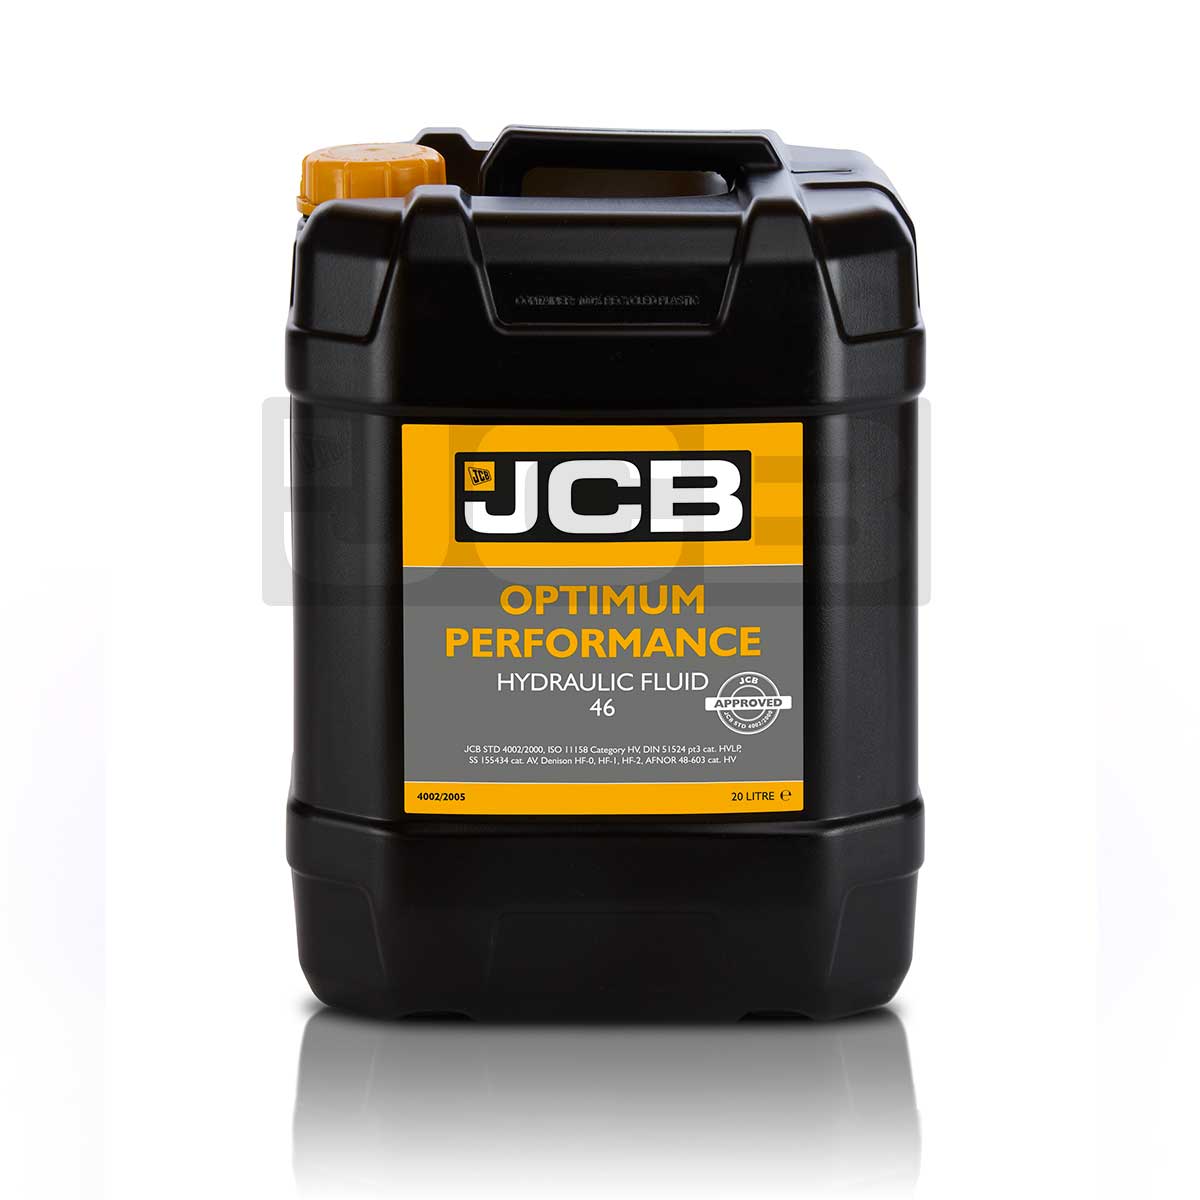 JCB Optimum Performance Hydraulic Fluid 46 - 20L : 4002/2005D